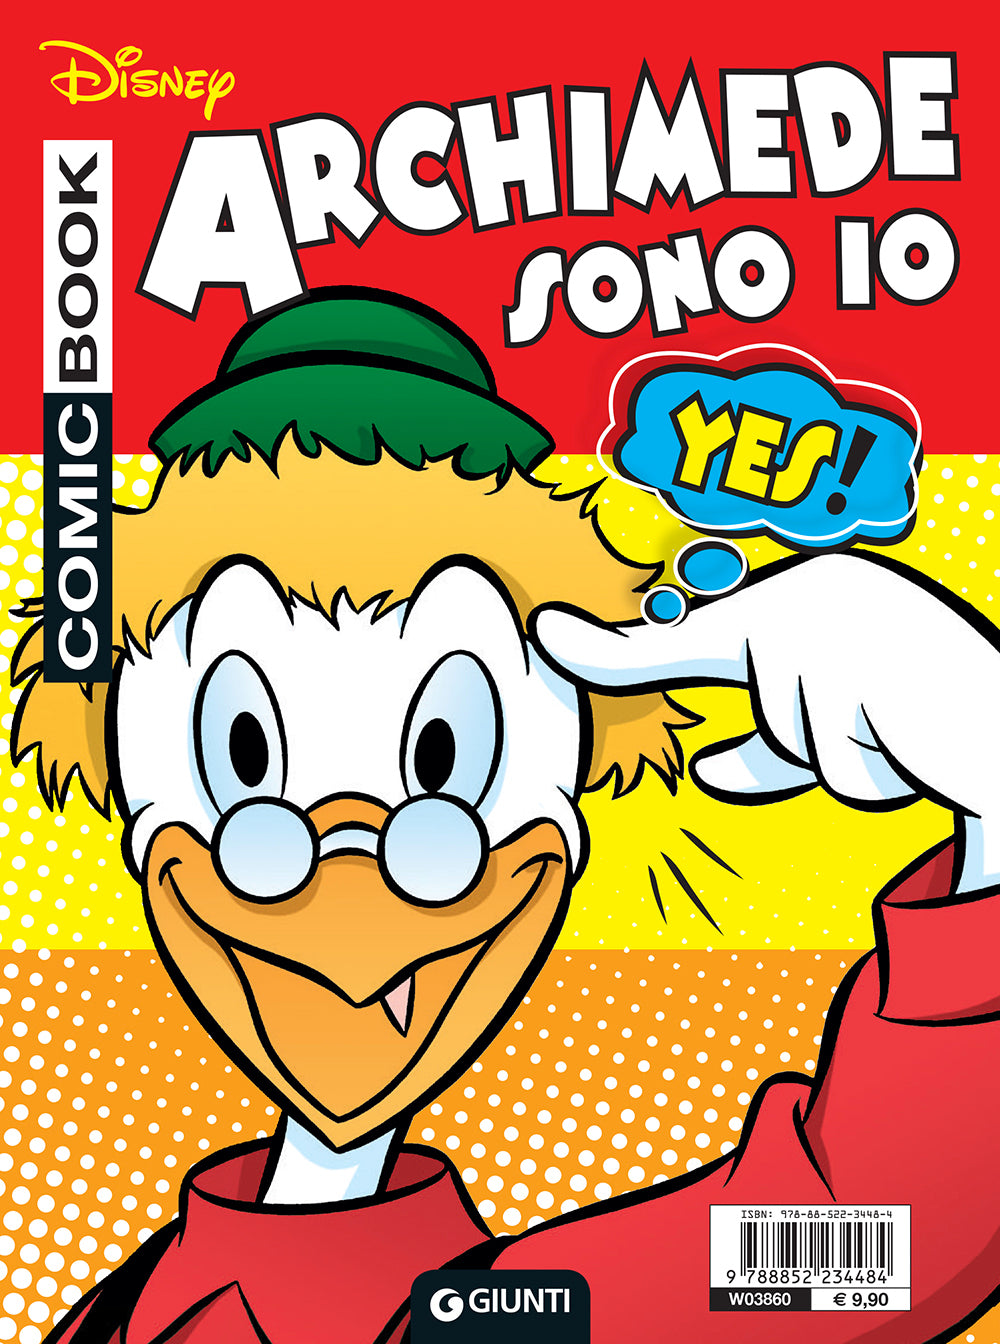 Comic Book - Paperino sono io e Archimede sono io